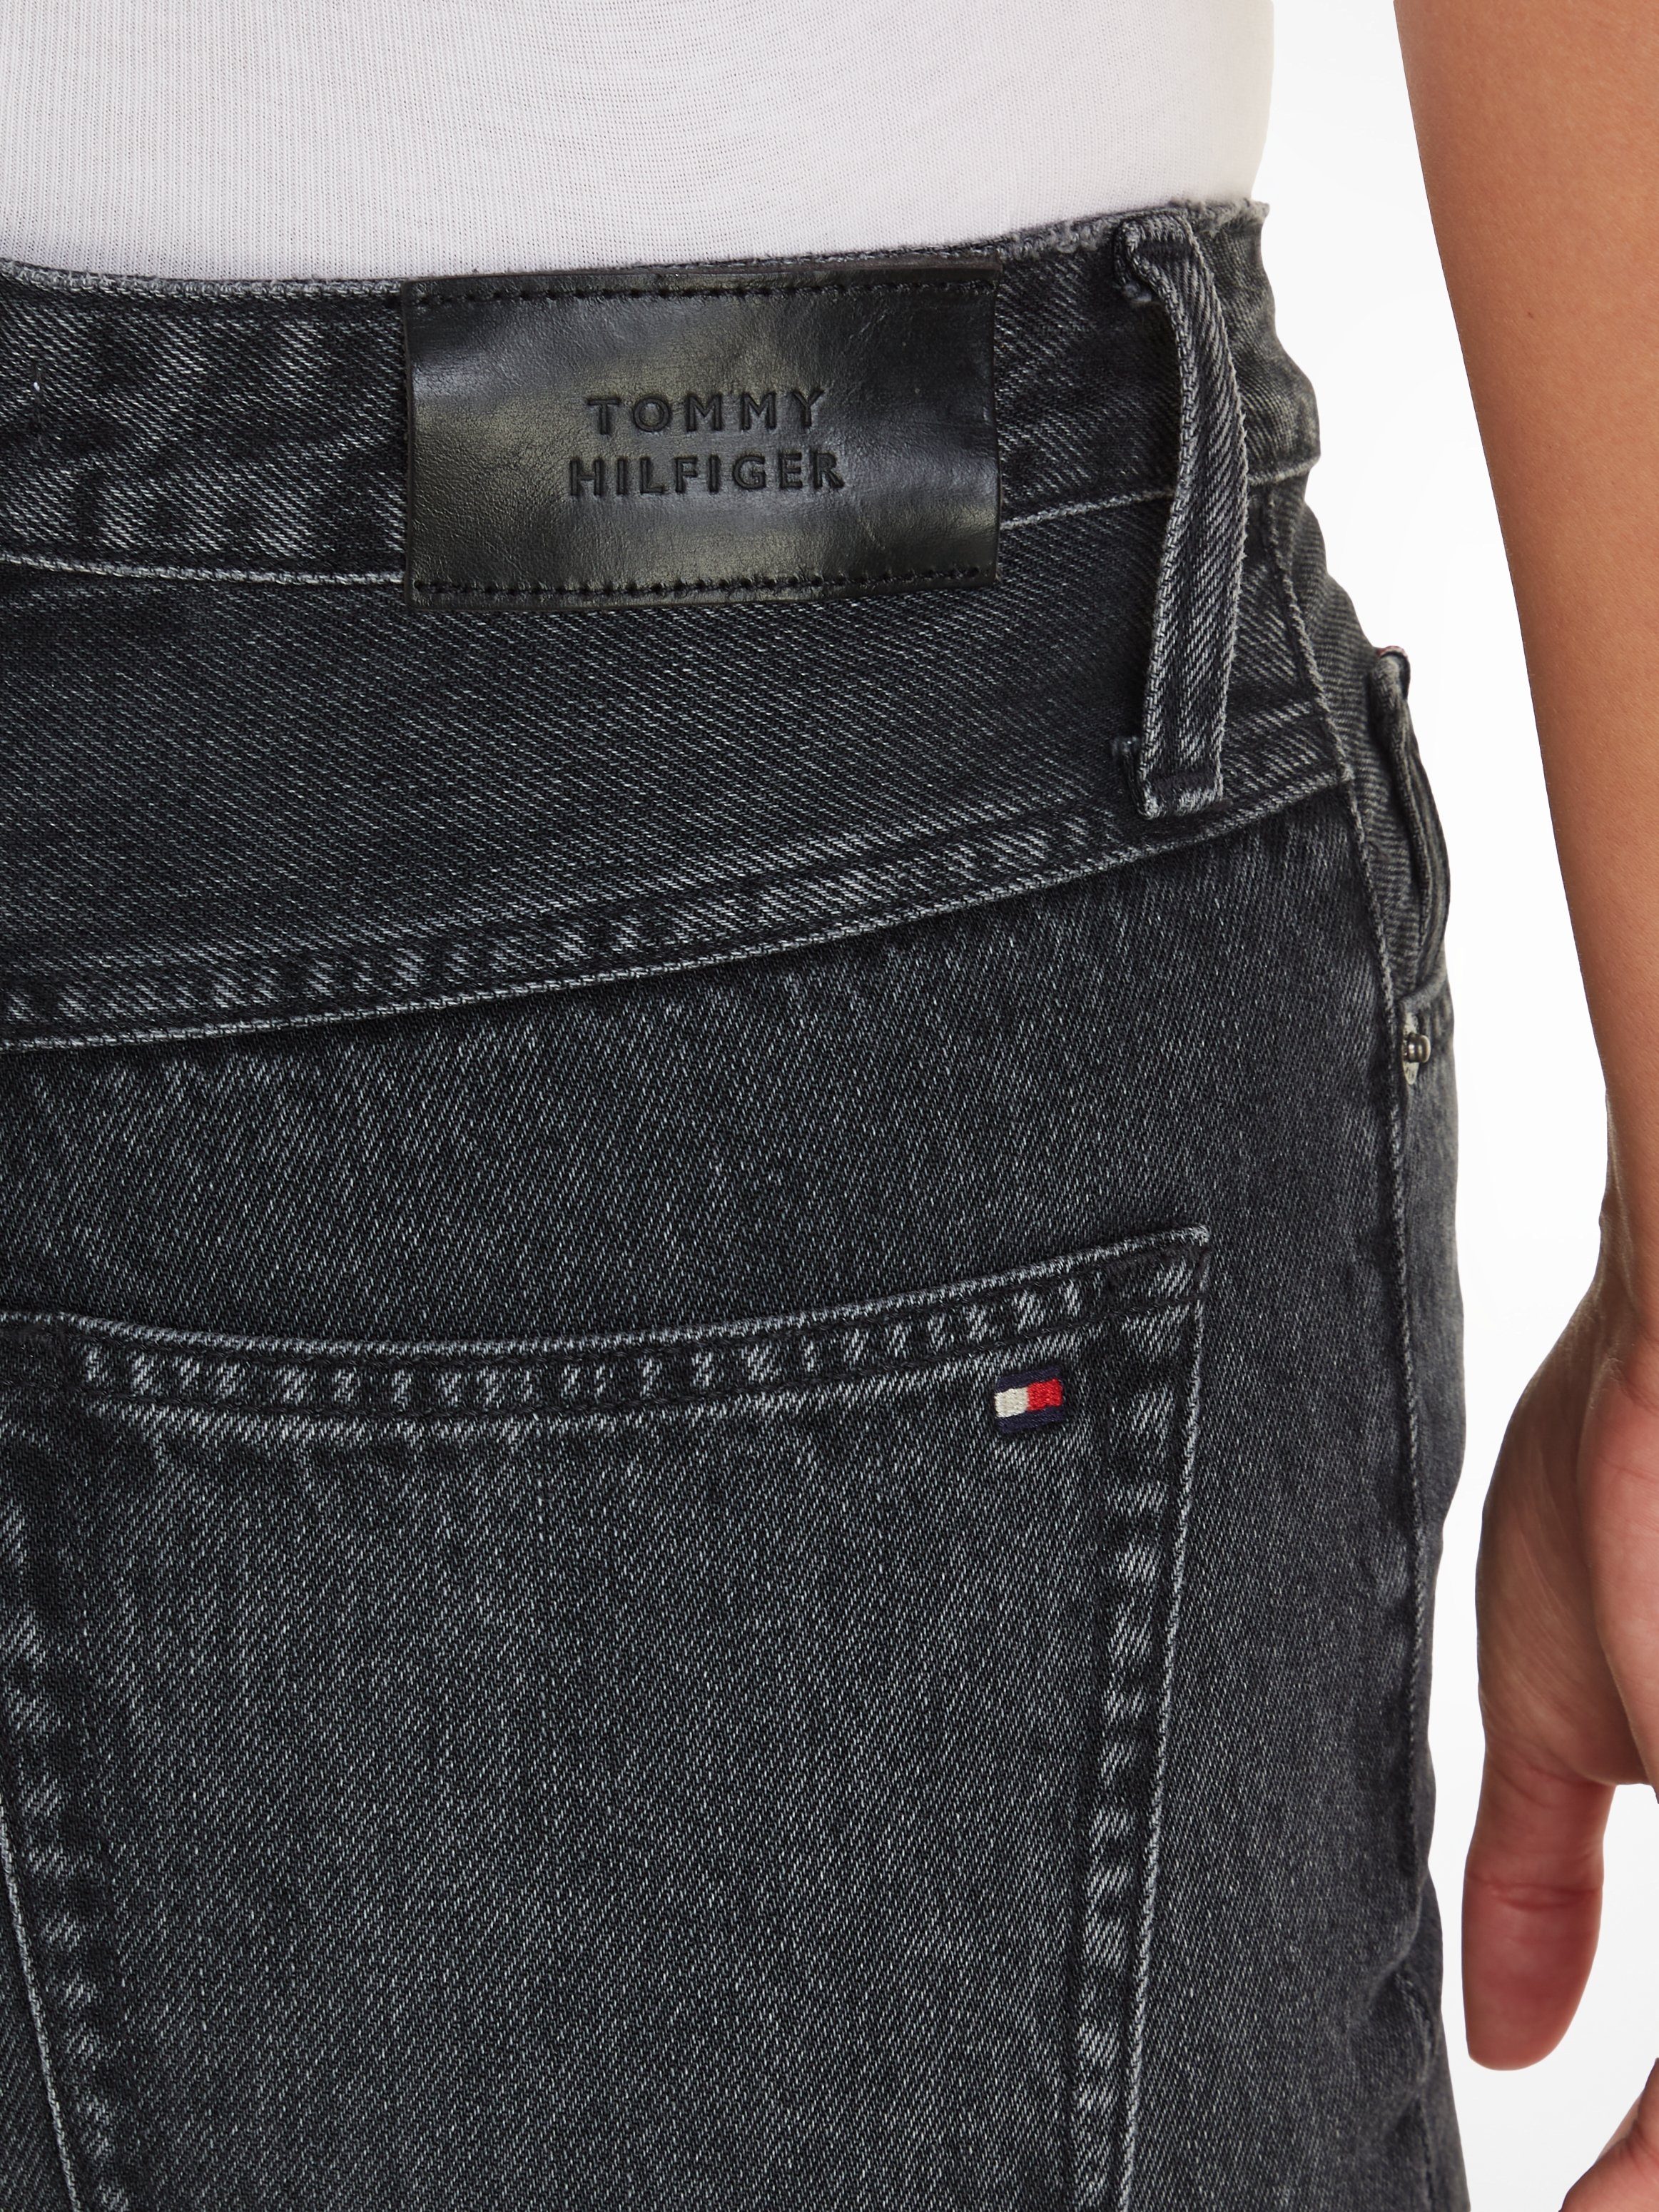 blue Jeans dark Bequeme Markenlabel mit Tommy Hilfiger